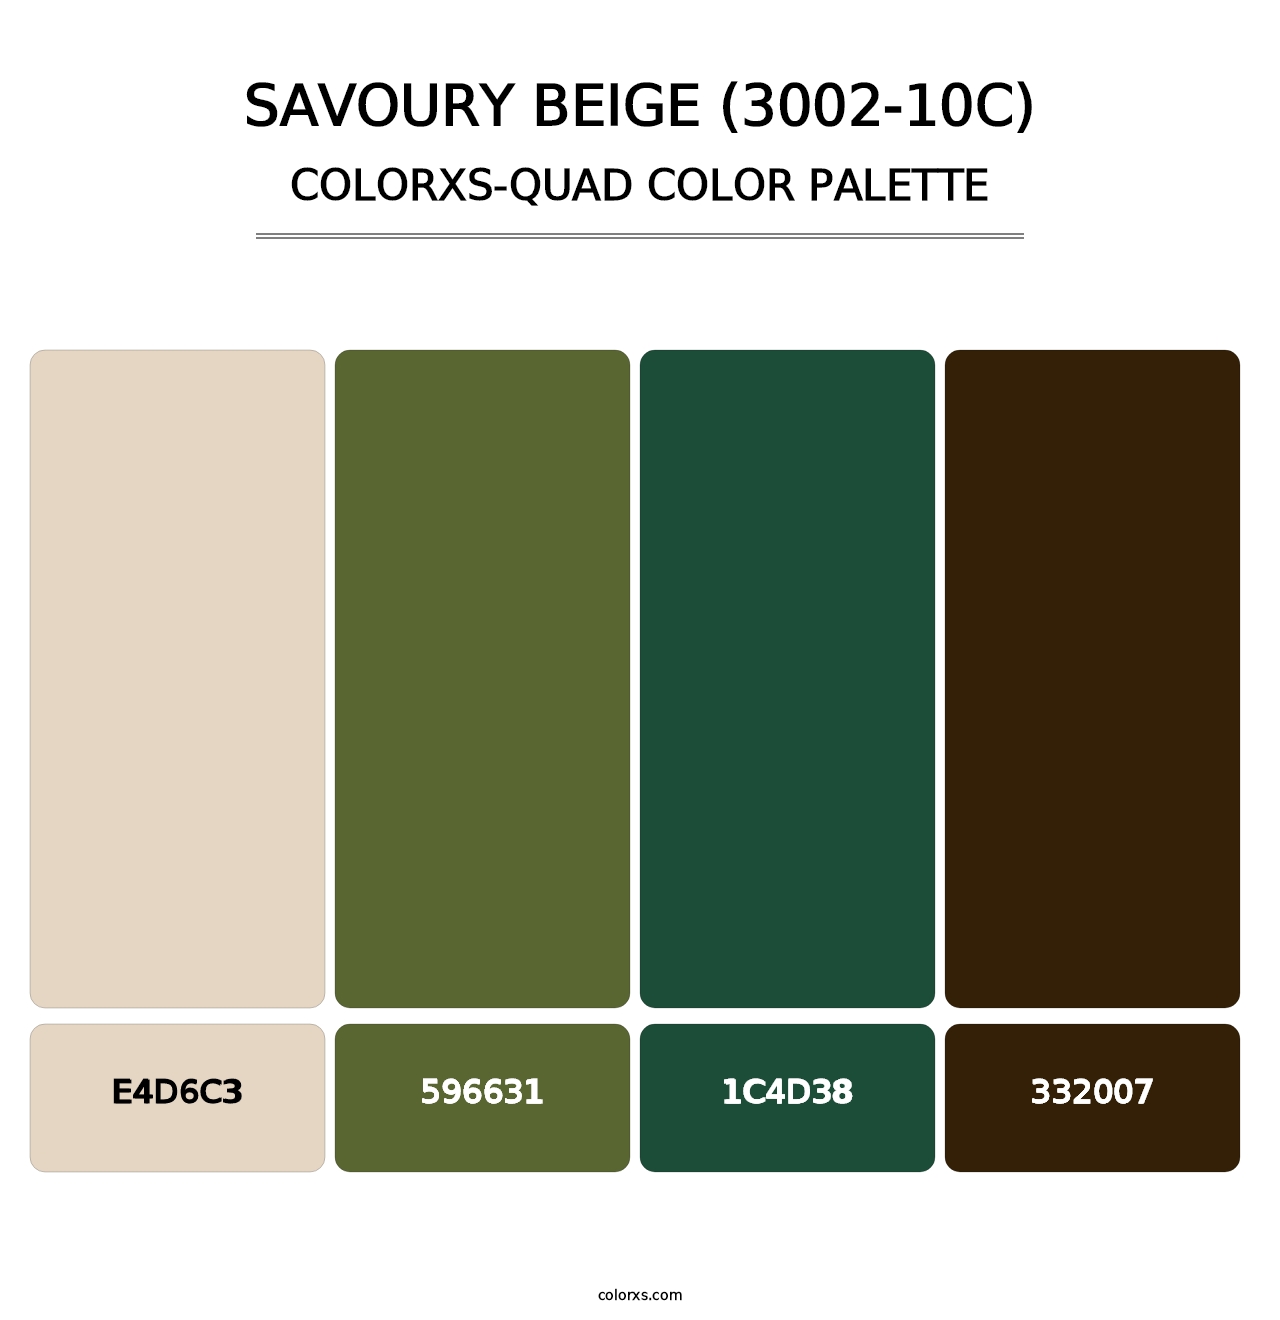 Savoury Beige (3002-10C) - Colorxs Quad Palette